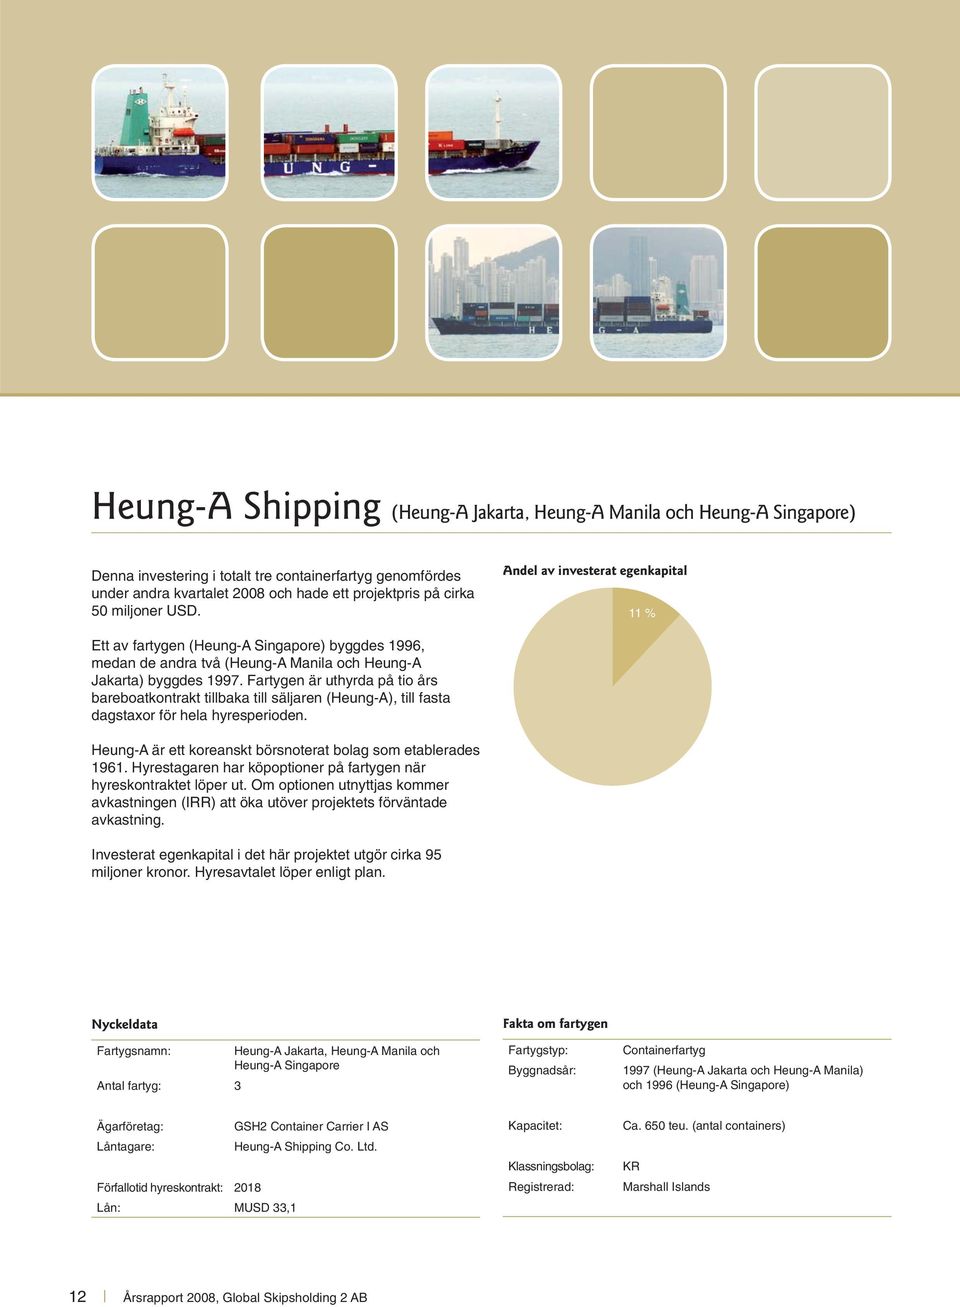 Fartygen är uthyrda på tio års bareboatkontrakt tillbaka till säljaren (Heung-A), till fasta dagstaxor för hela hyresperioden. Heung-A är ett koreanskt börsnoterat bolag som etablerades 1961.